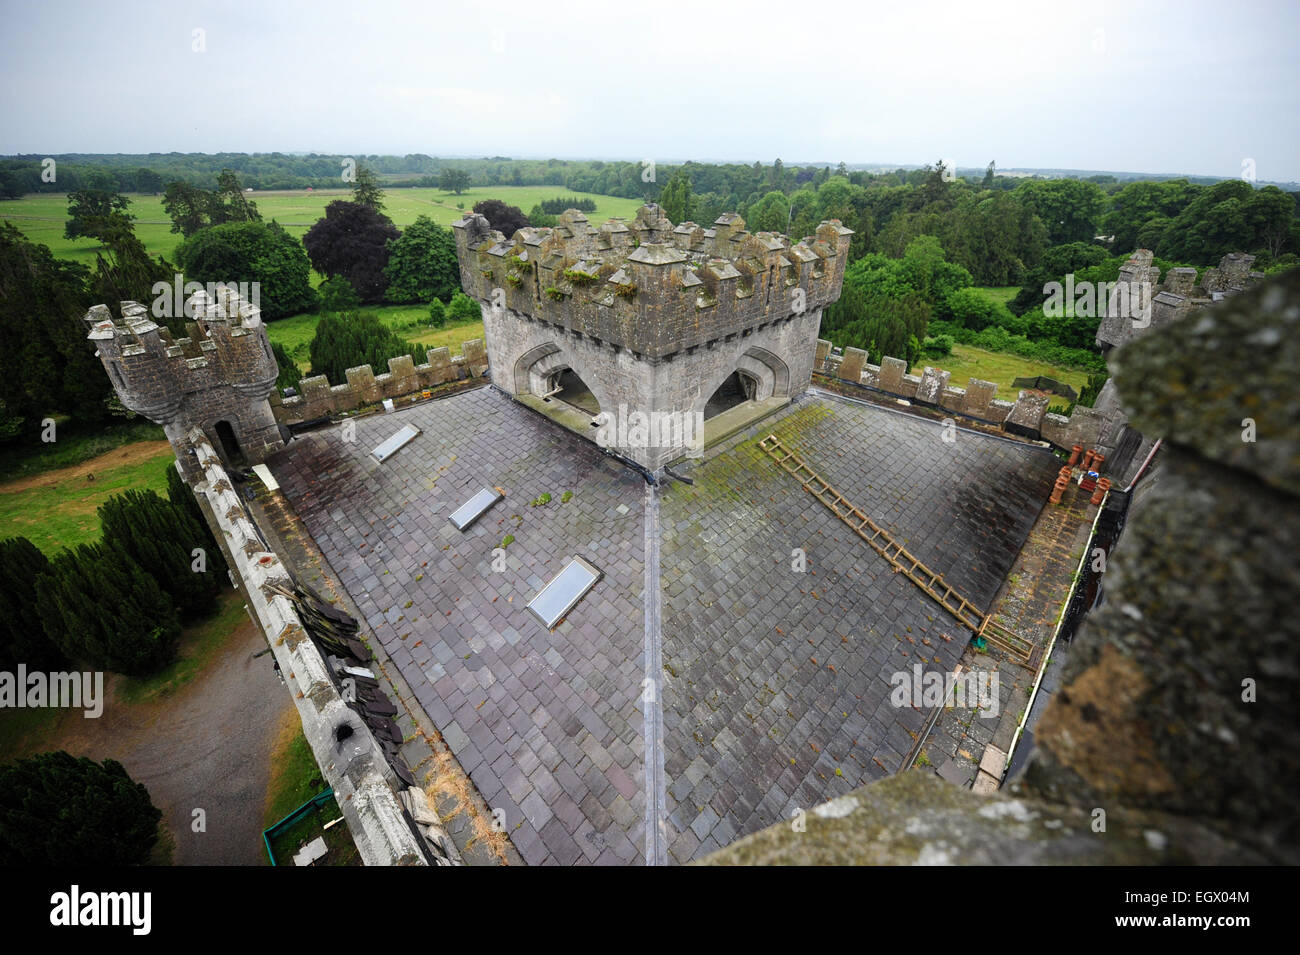 Le toit principal du Château de Charleville, Tullamore, Co Offaly, Irlande. Photographie : James Flynn/Alamy Banque D'Images